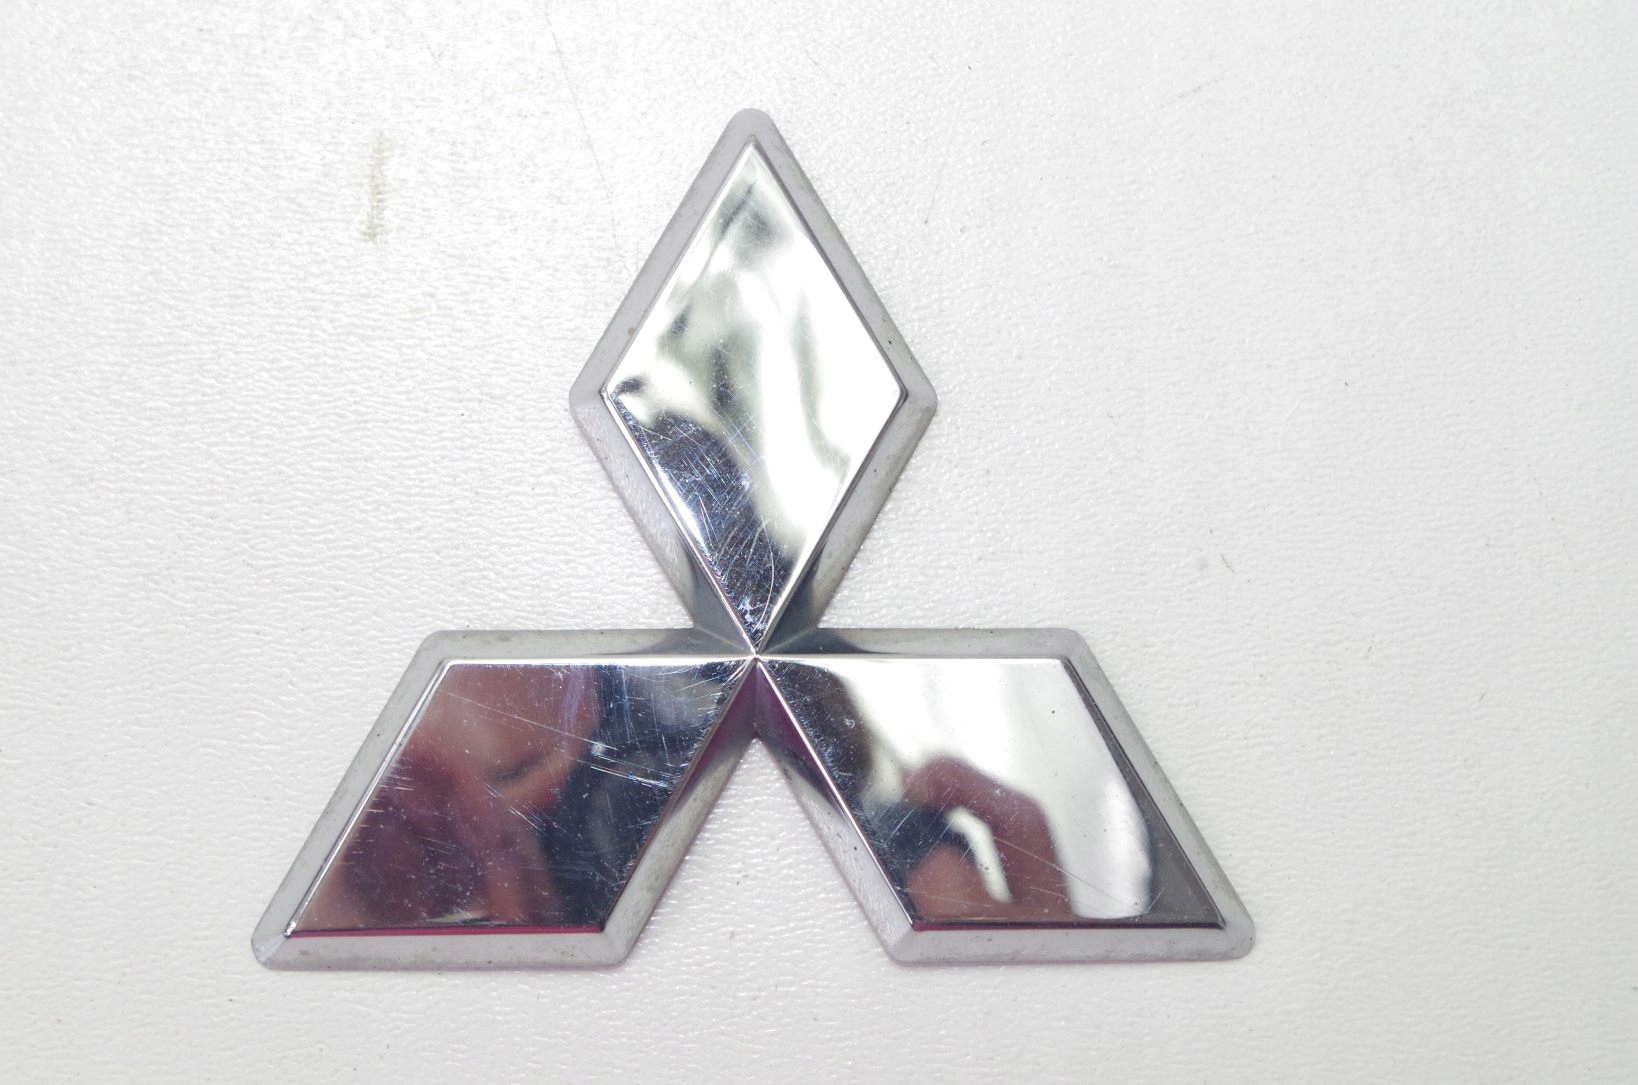 Машина три треугольника. Mitsubishi 7415a015. Три Ромбика марка Митсубиси. Mitsubishi mr913913 эмблема три ромба. Mitsubishi7415a007.